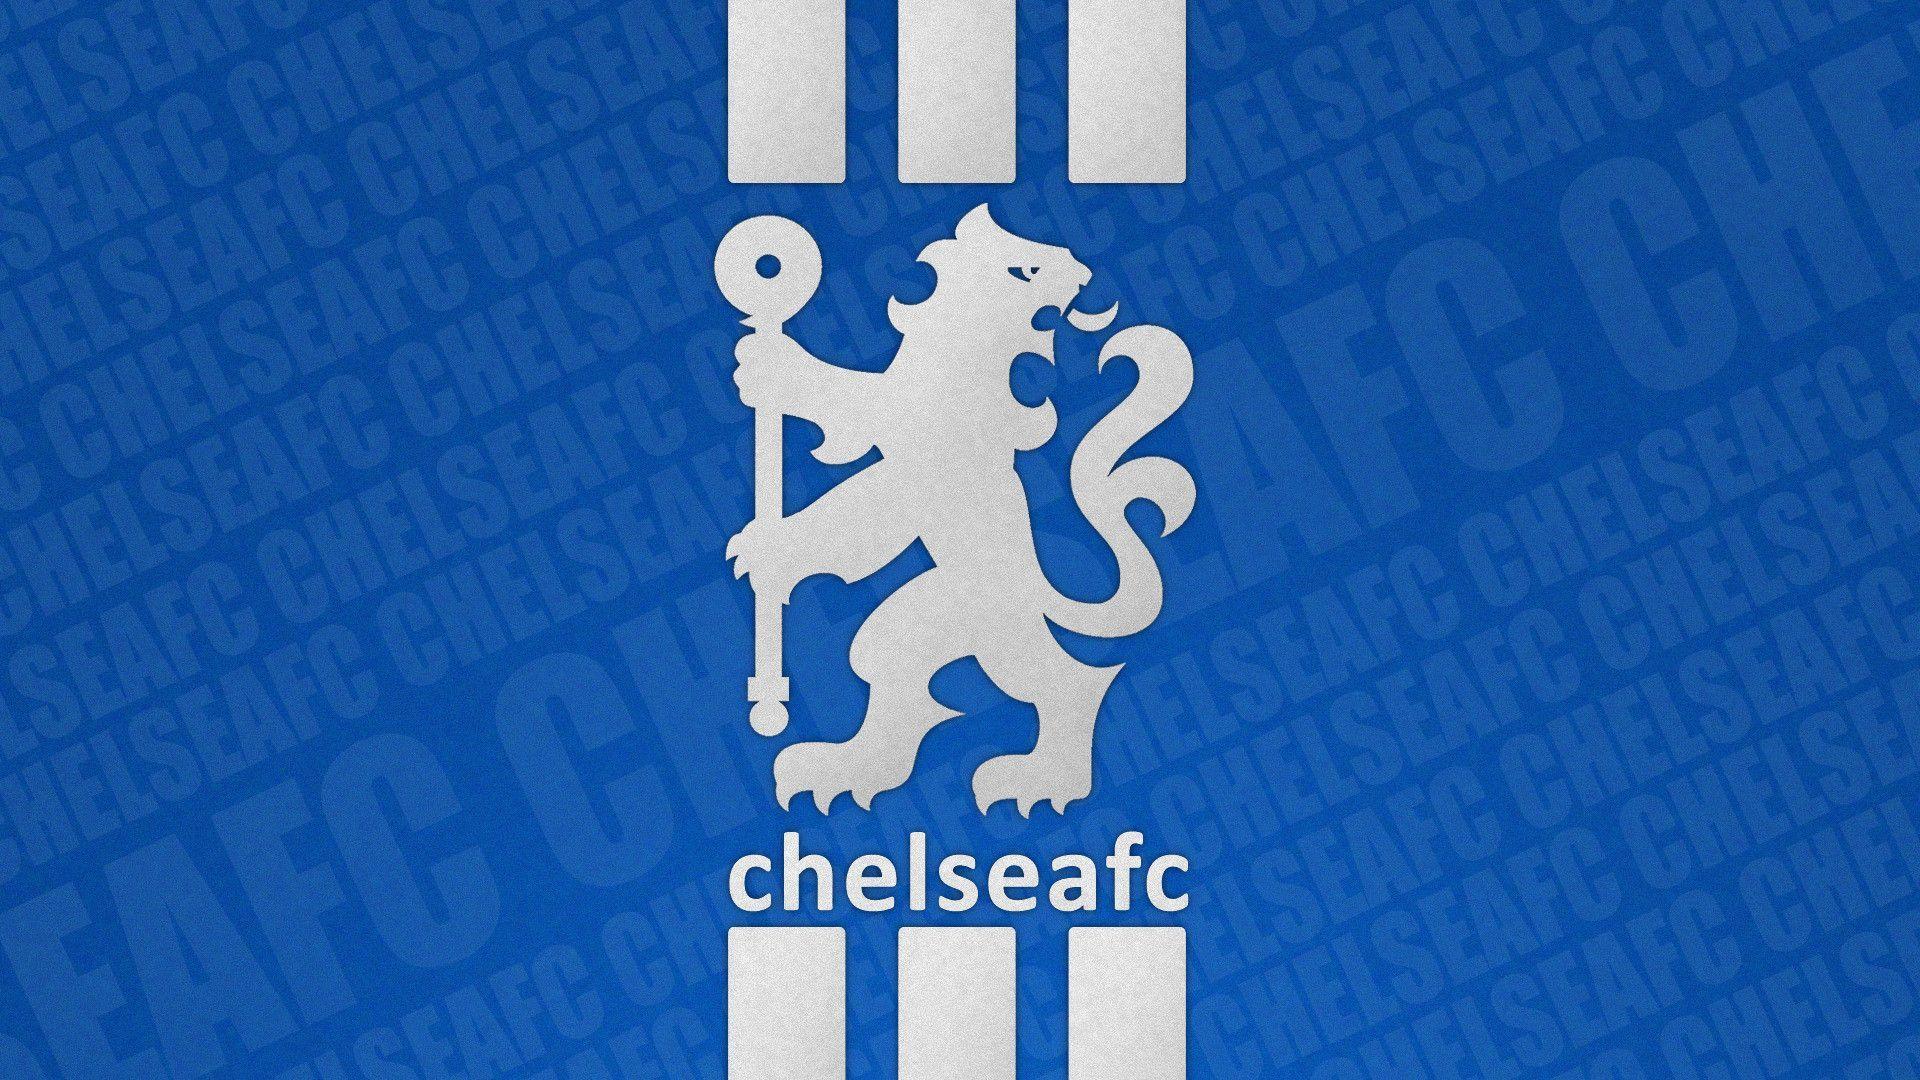 47+] Chelsea FC iPhone 5 Wallpaper - WallpaperSafari